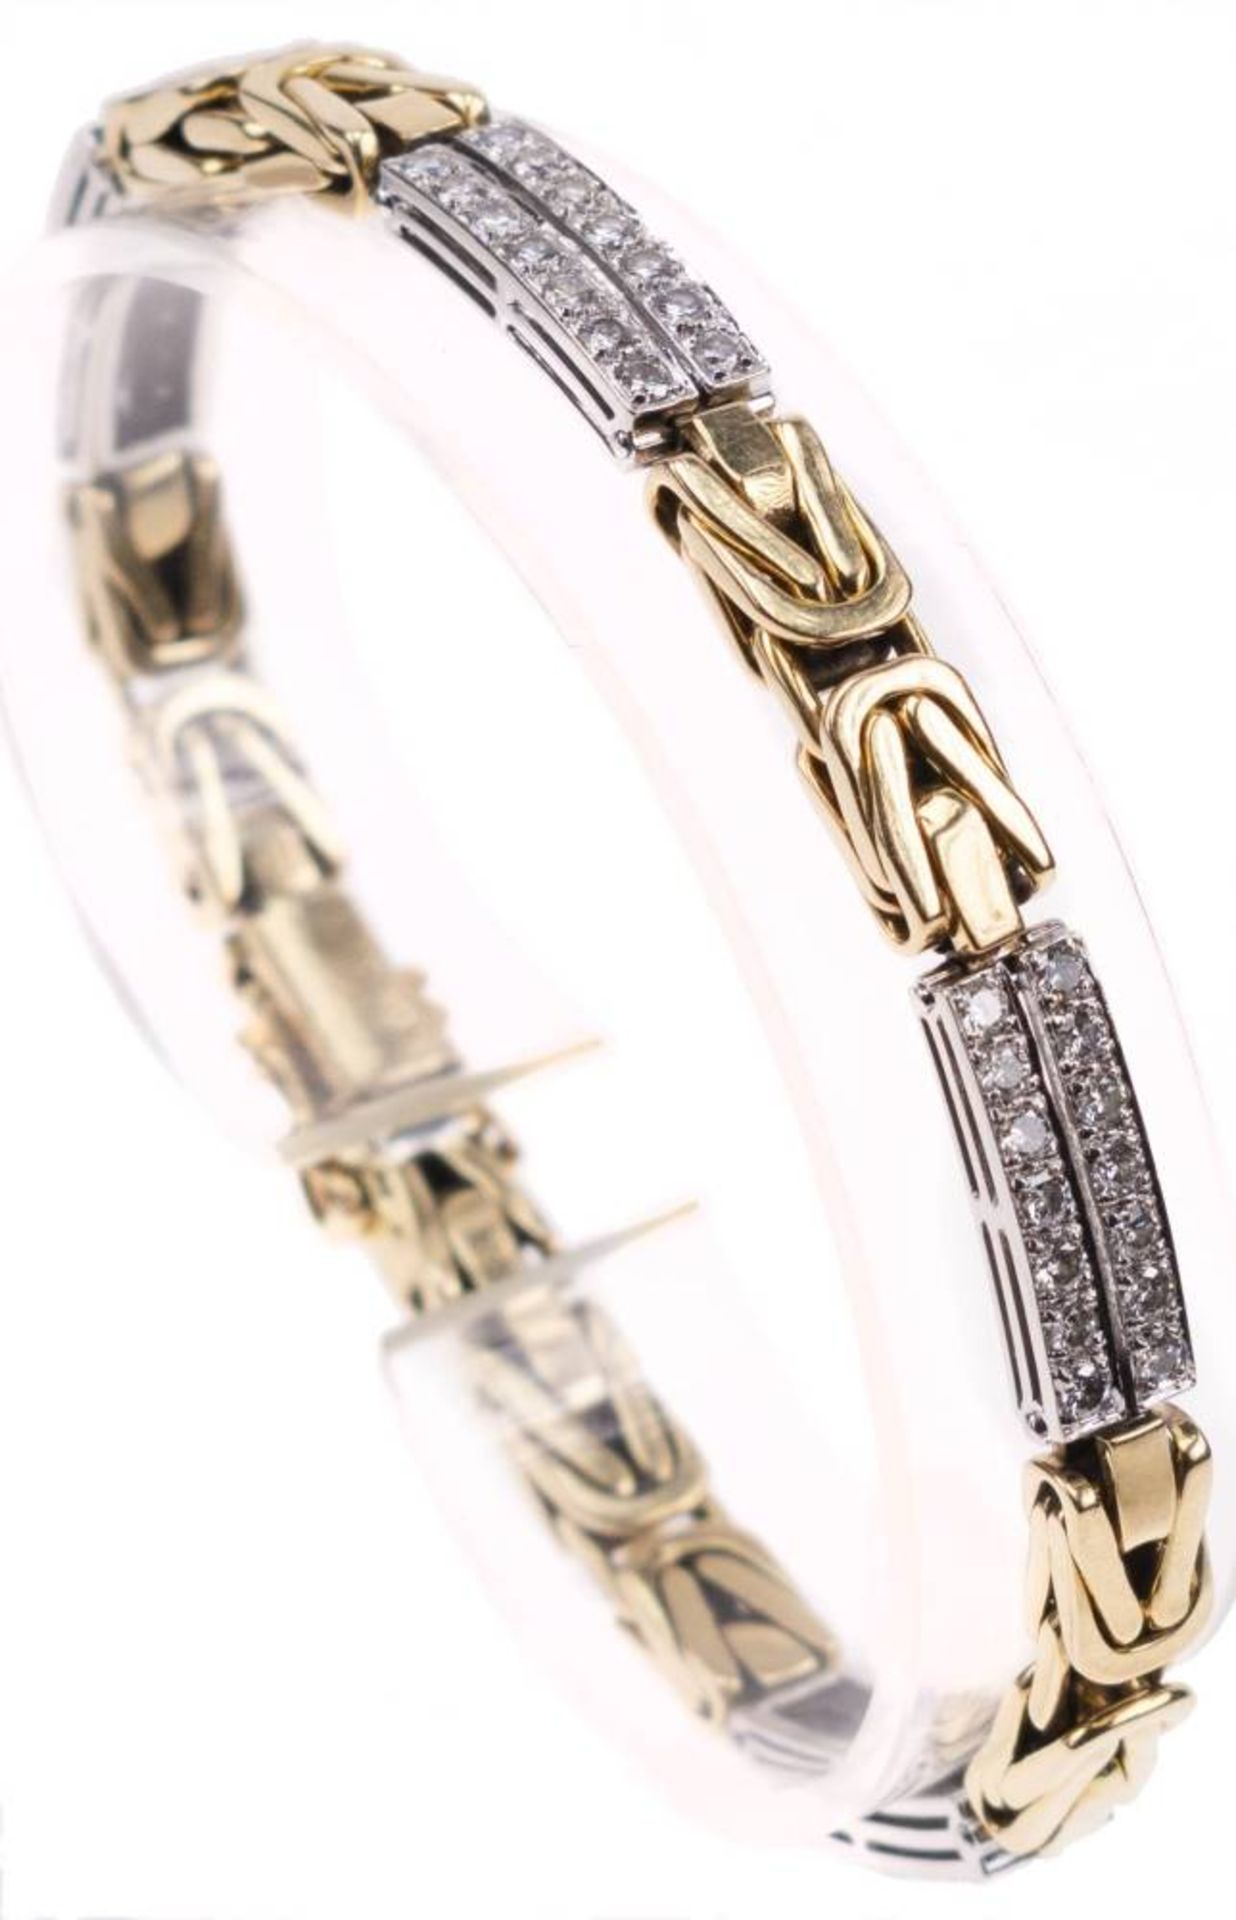 Brillanten Armband, 750 Gold, bicolor, 56 Brillanten von zus. 1,68 ct, TW-Lupenrein, L. ca. 19,5 cm,